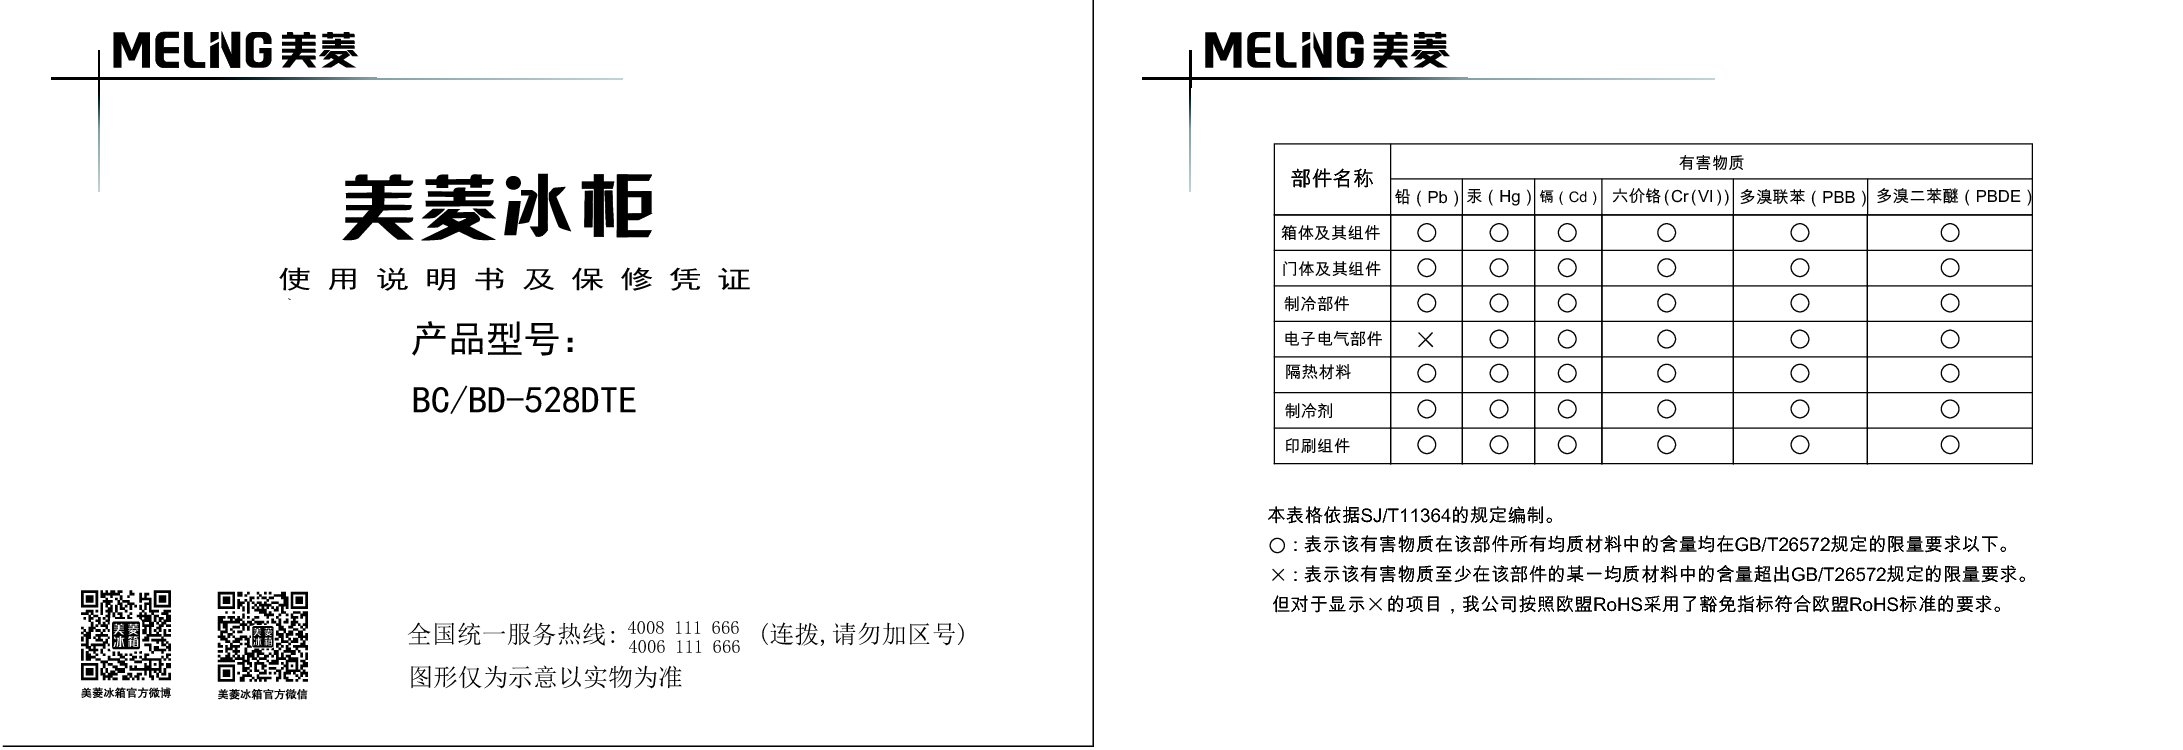 美菱 Meiling BC/BD-528DTE 使用说明书 封面